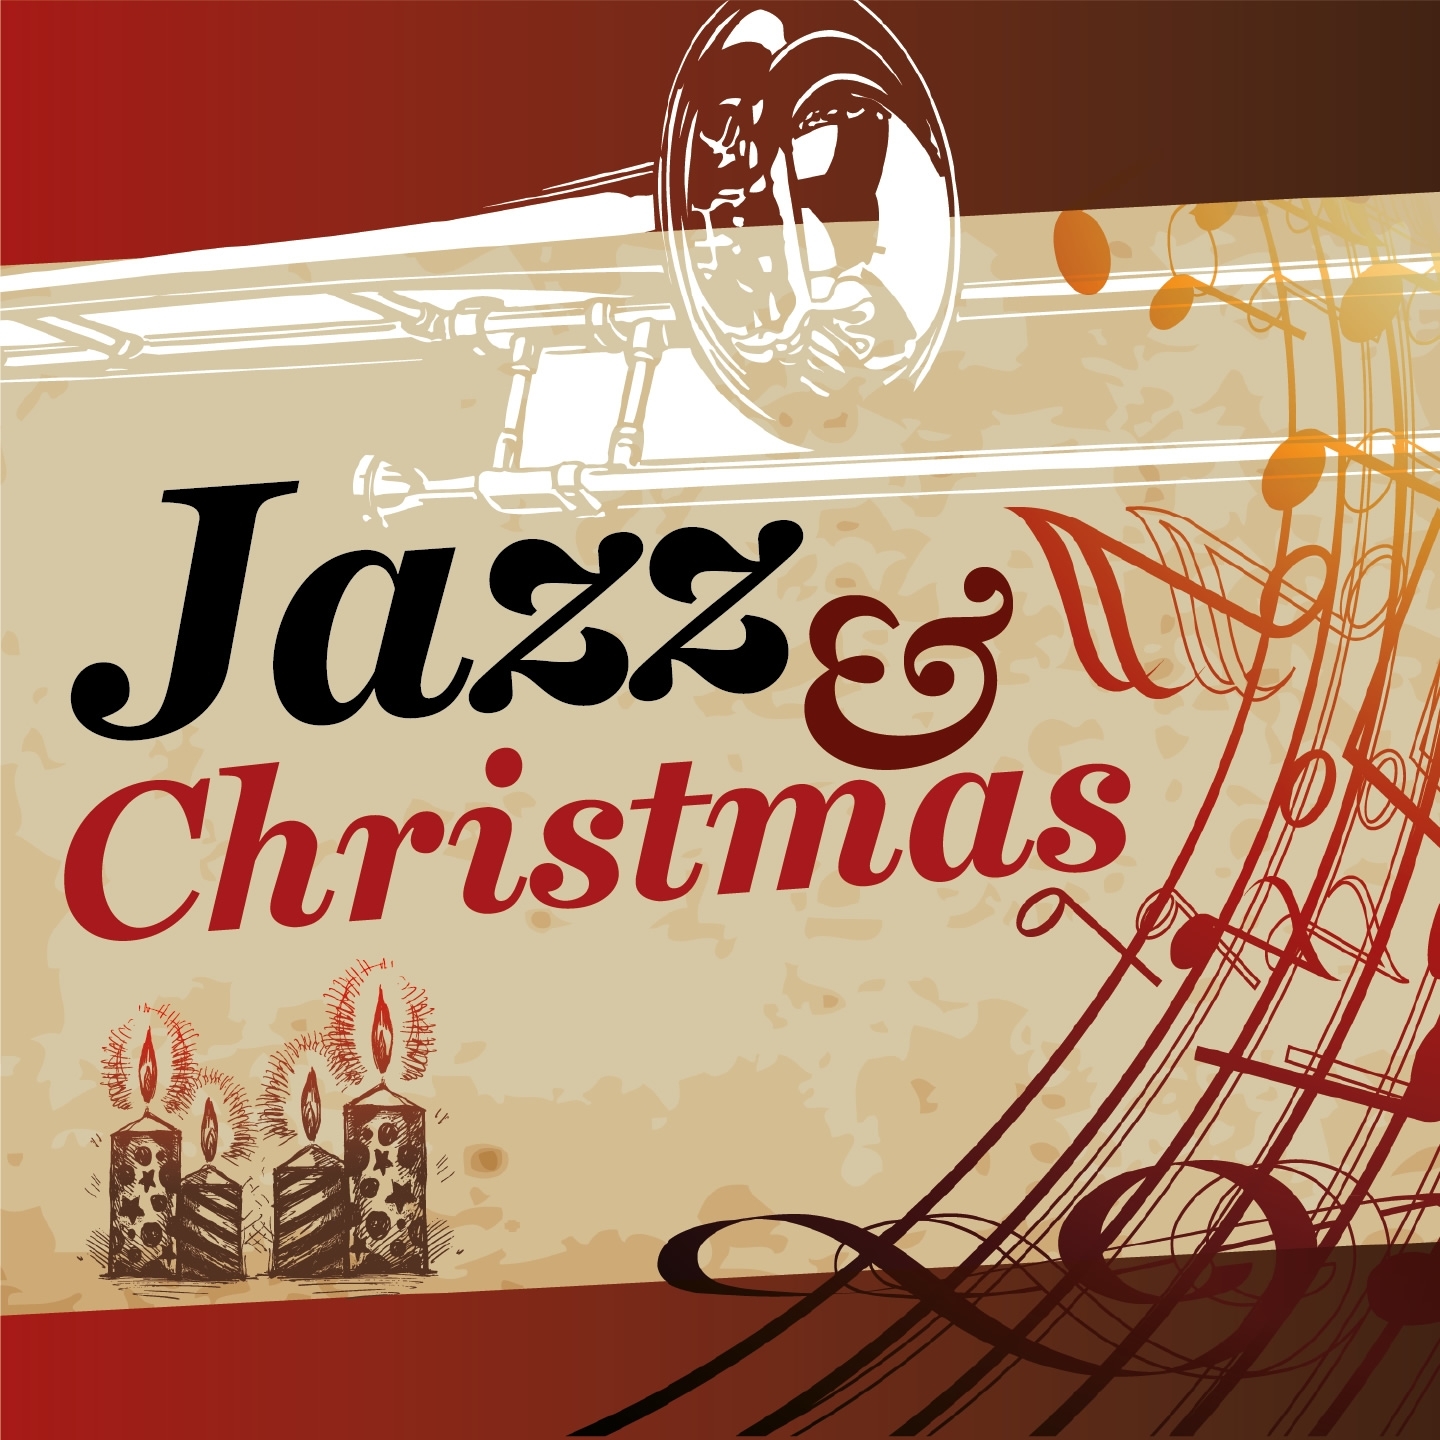 Christmas & Jazz